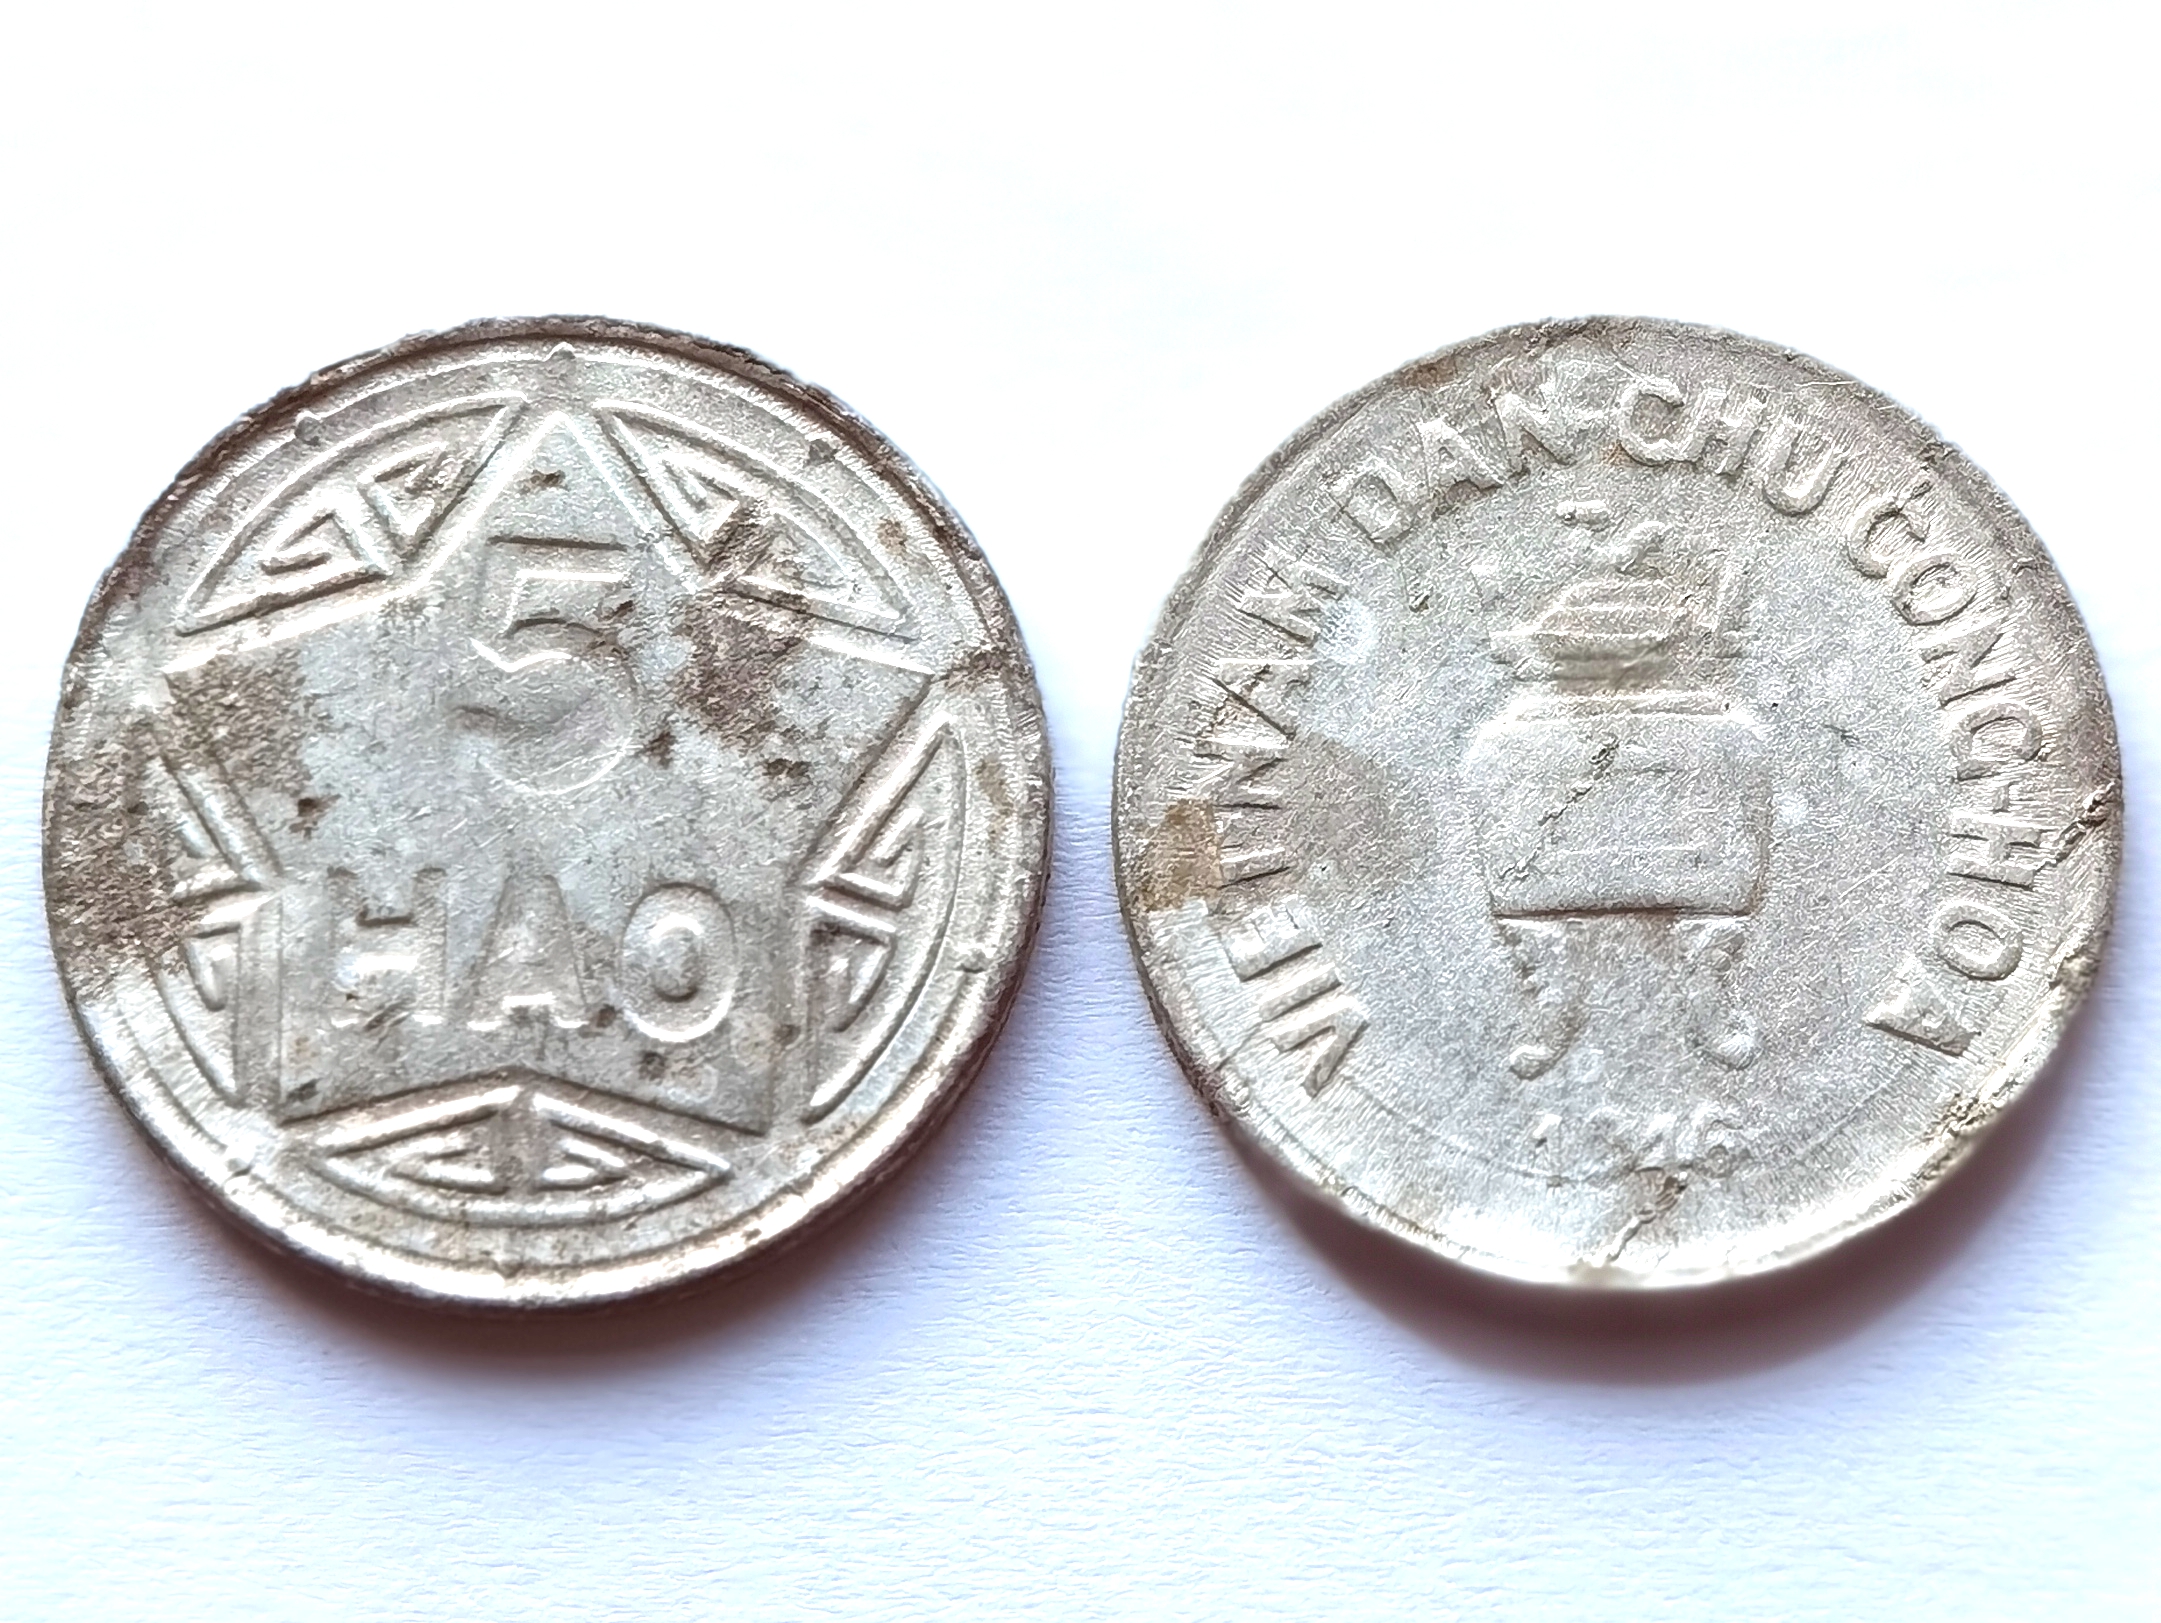 V3001, VietNam North 1946 Five Hao coin, No 2.1